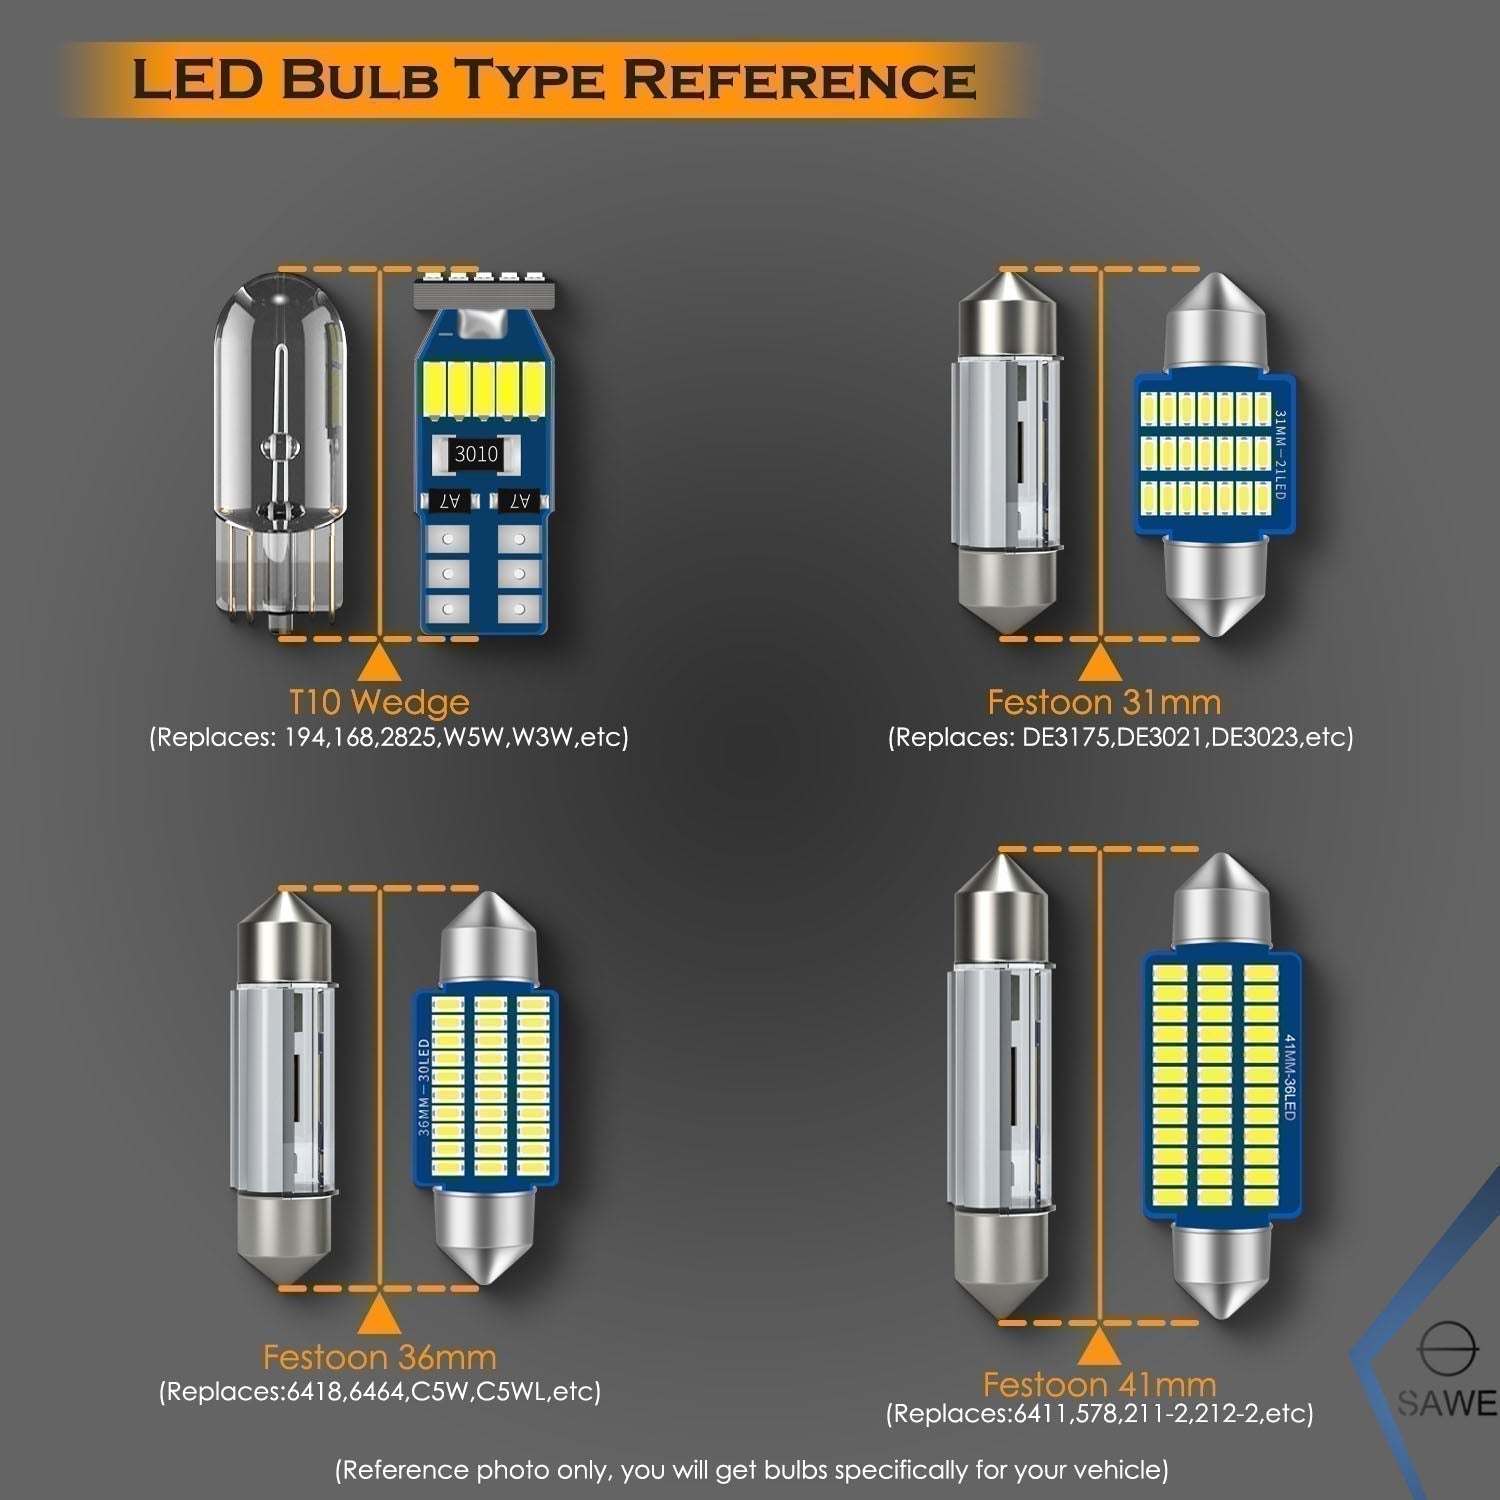 For Lexus SC430 Interior LED Lights - Dome & Map Light Bulbs Package Kit for 2002 - 2010 - White